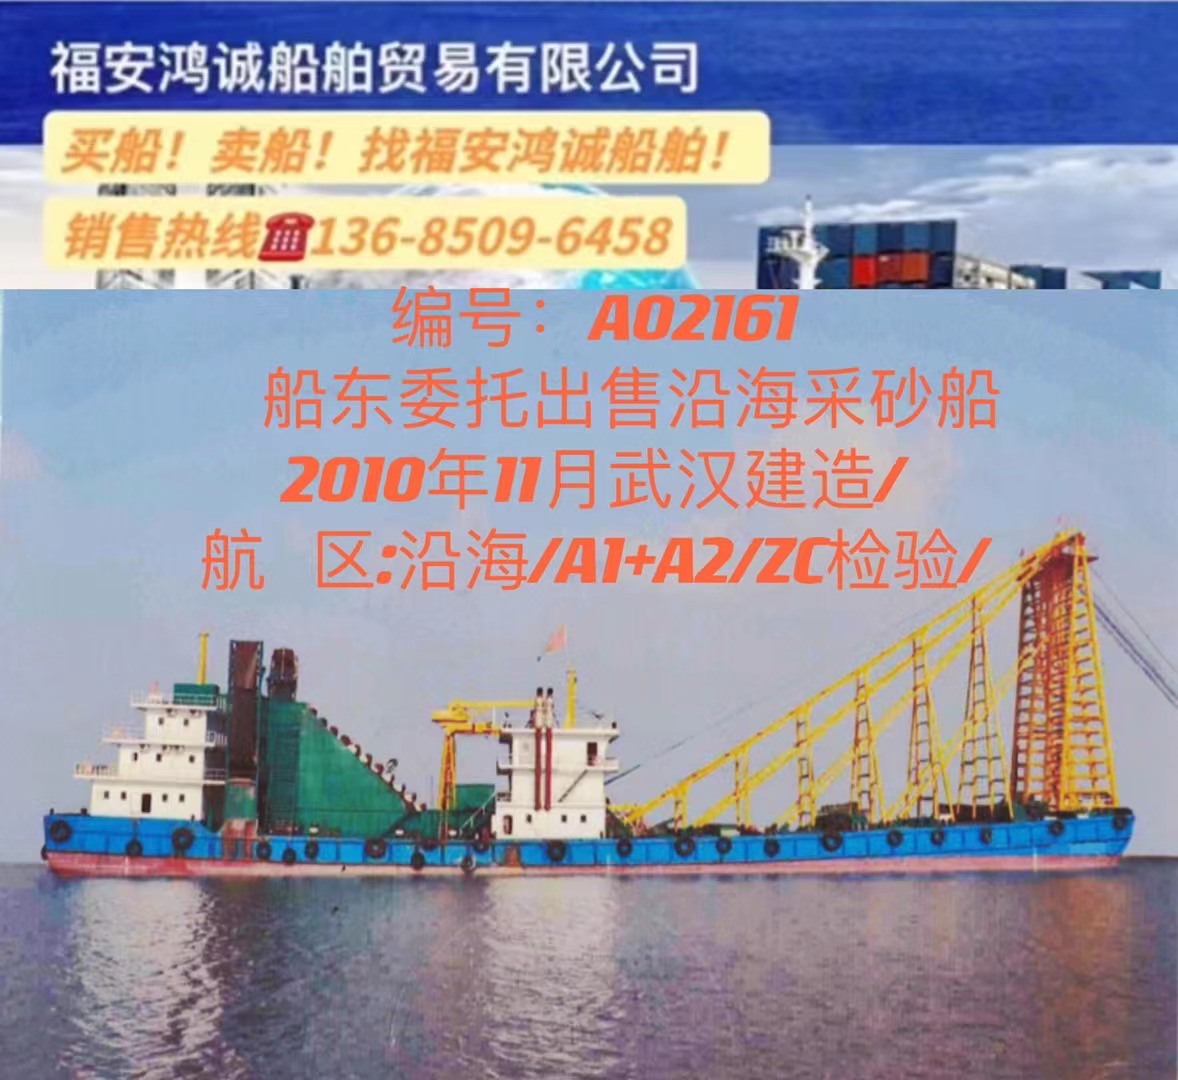 出售沿海采砂船 2010年11月武汉建造